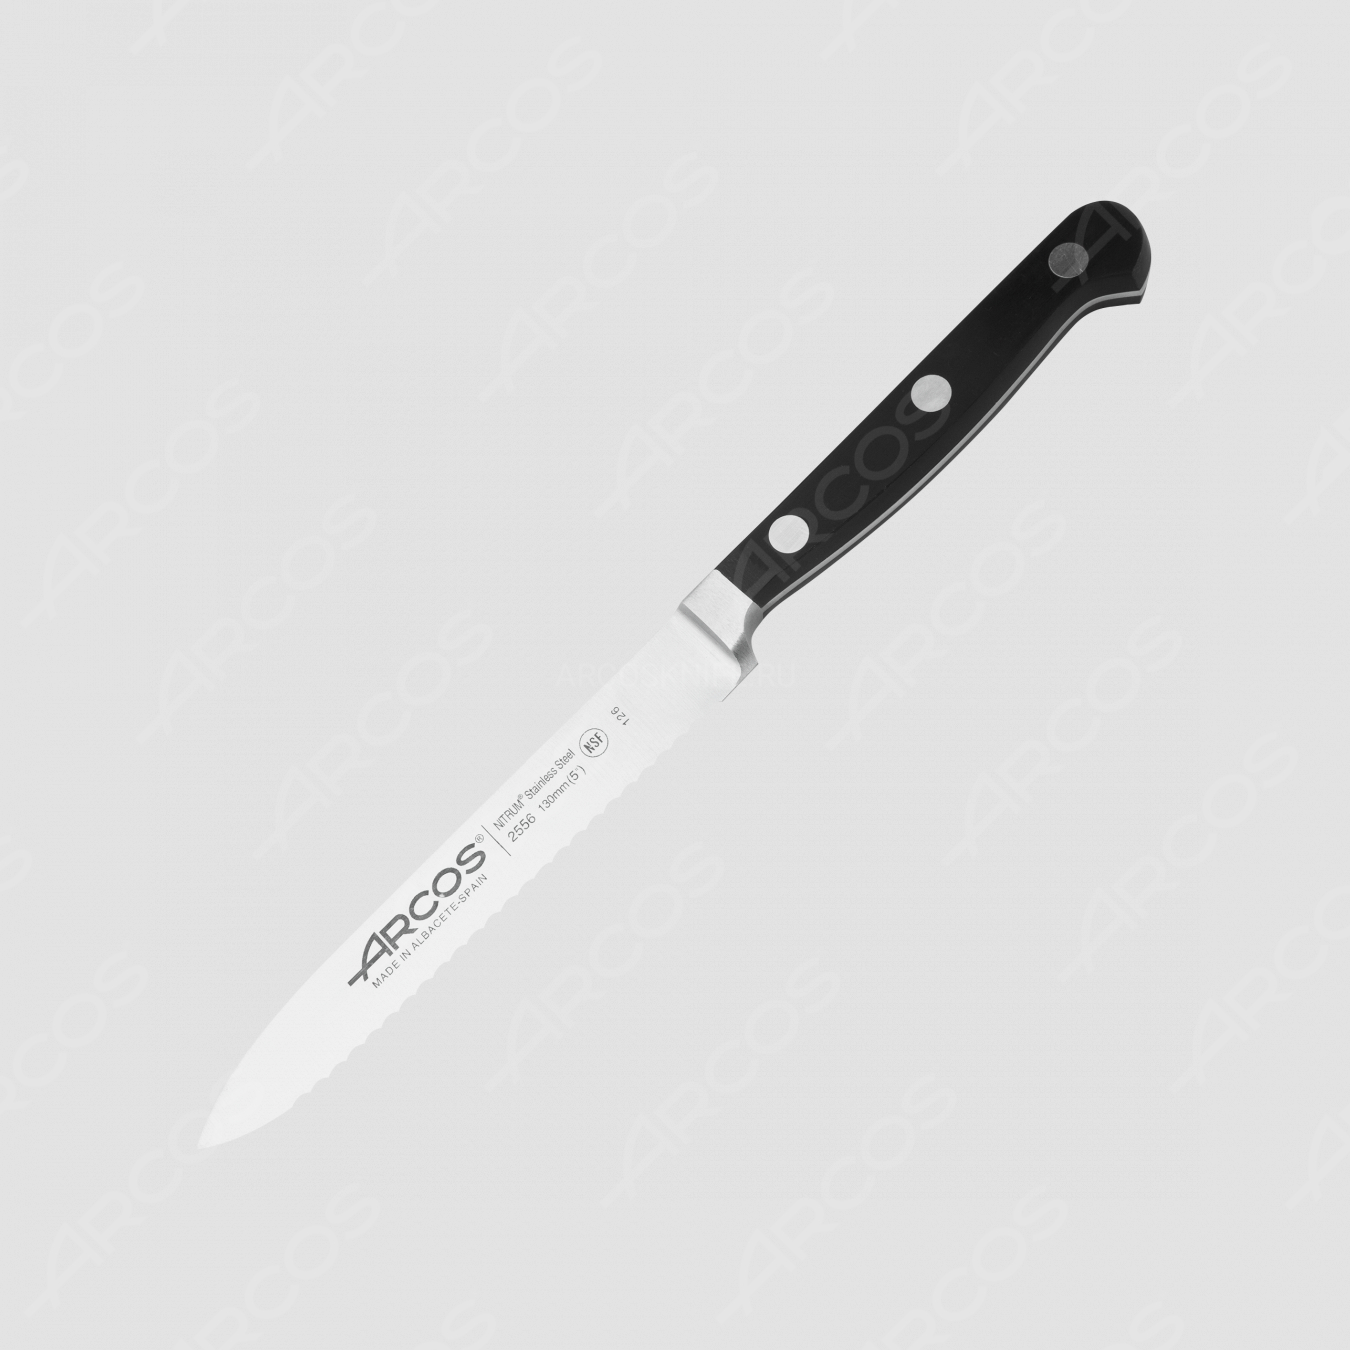 Нож кухонный для томатов 13 см, серия Clasica, ARCOS, Испания